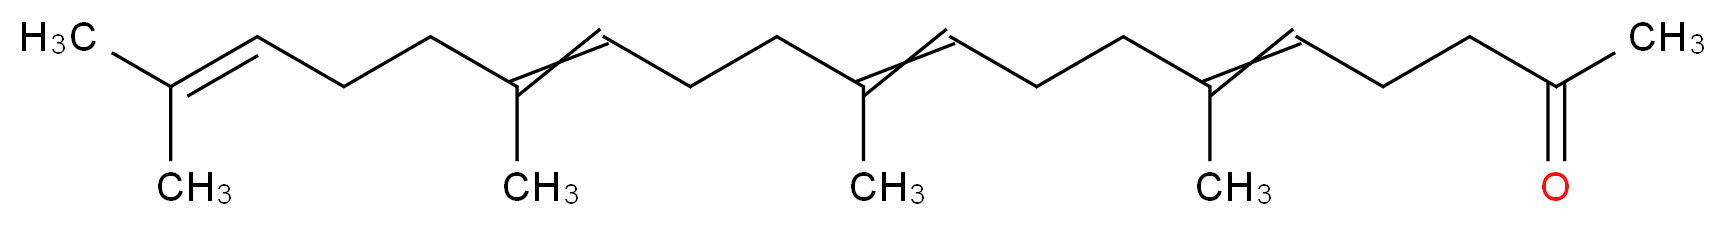 Teprenone_分子结构_CAS_6809-52-5)